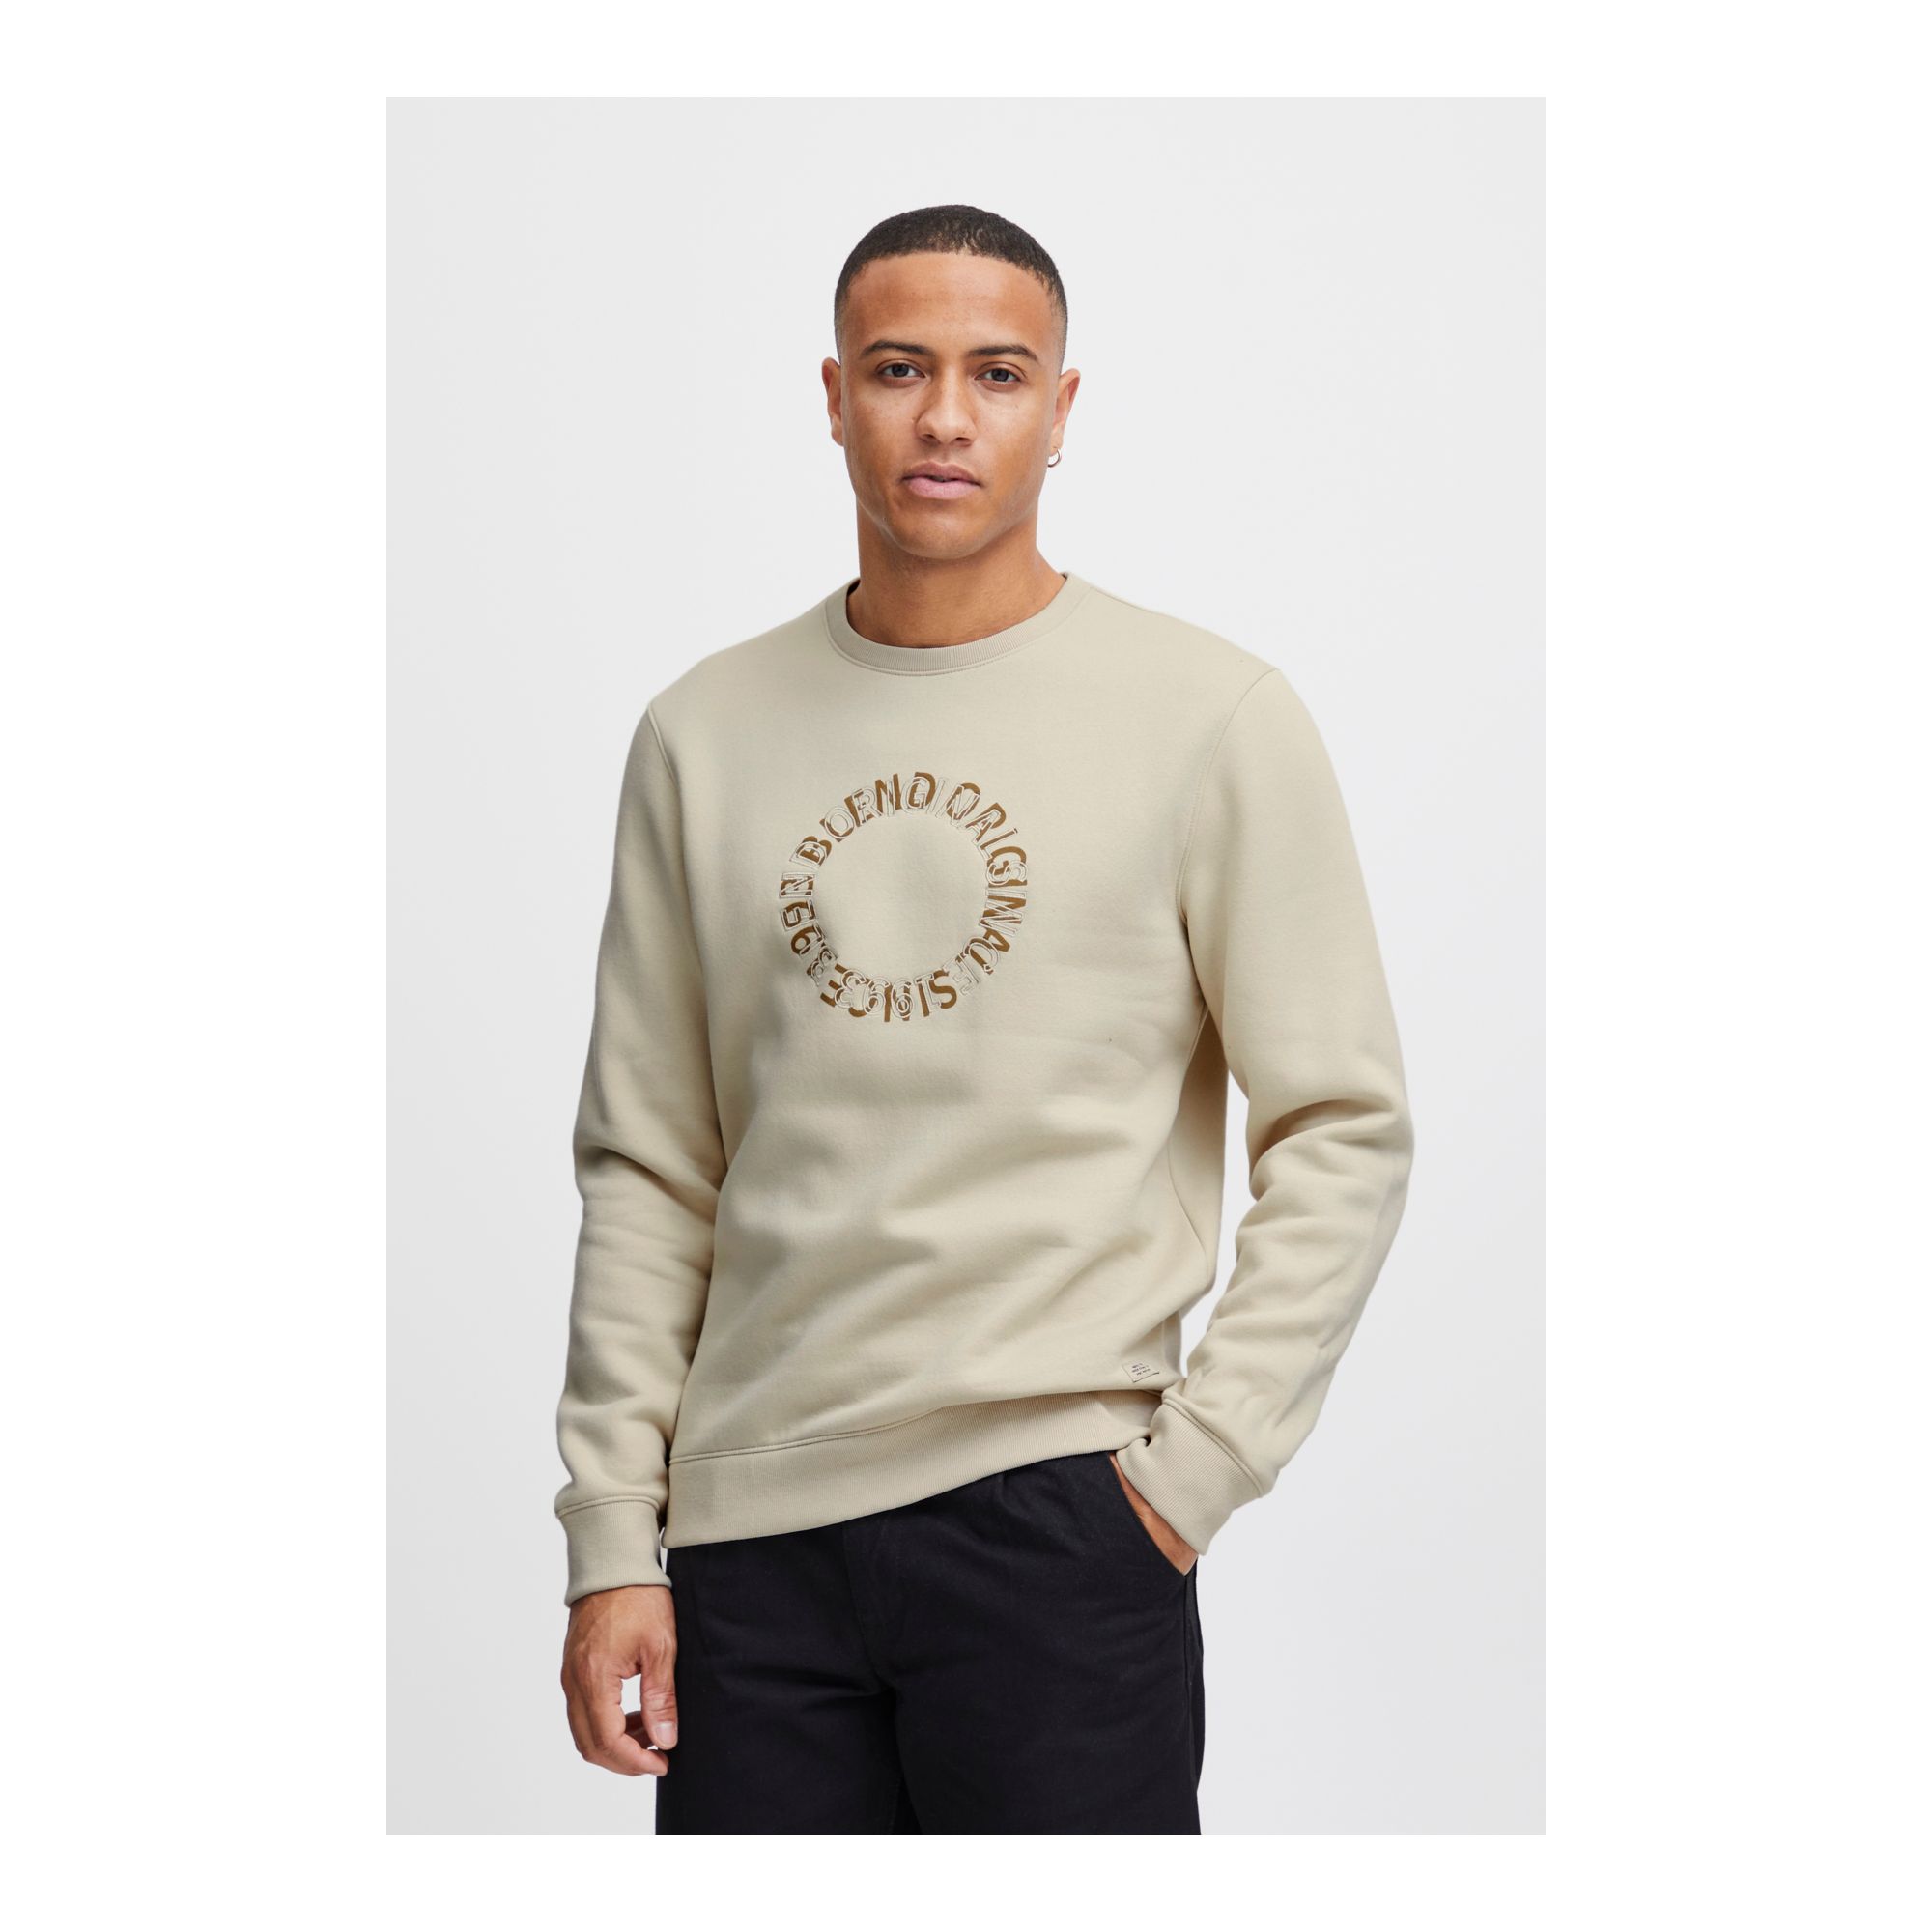 Sweater Original Blend of America - 3321793